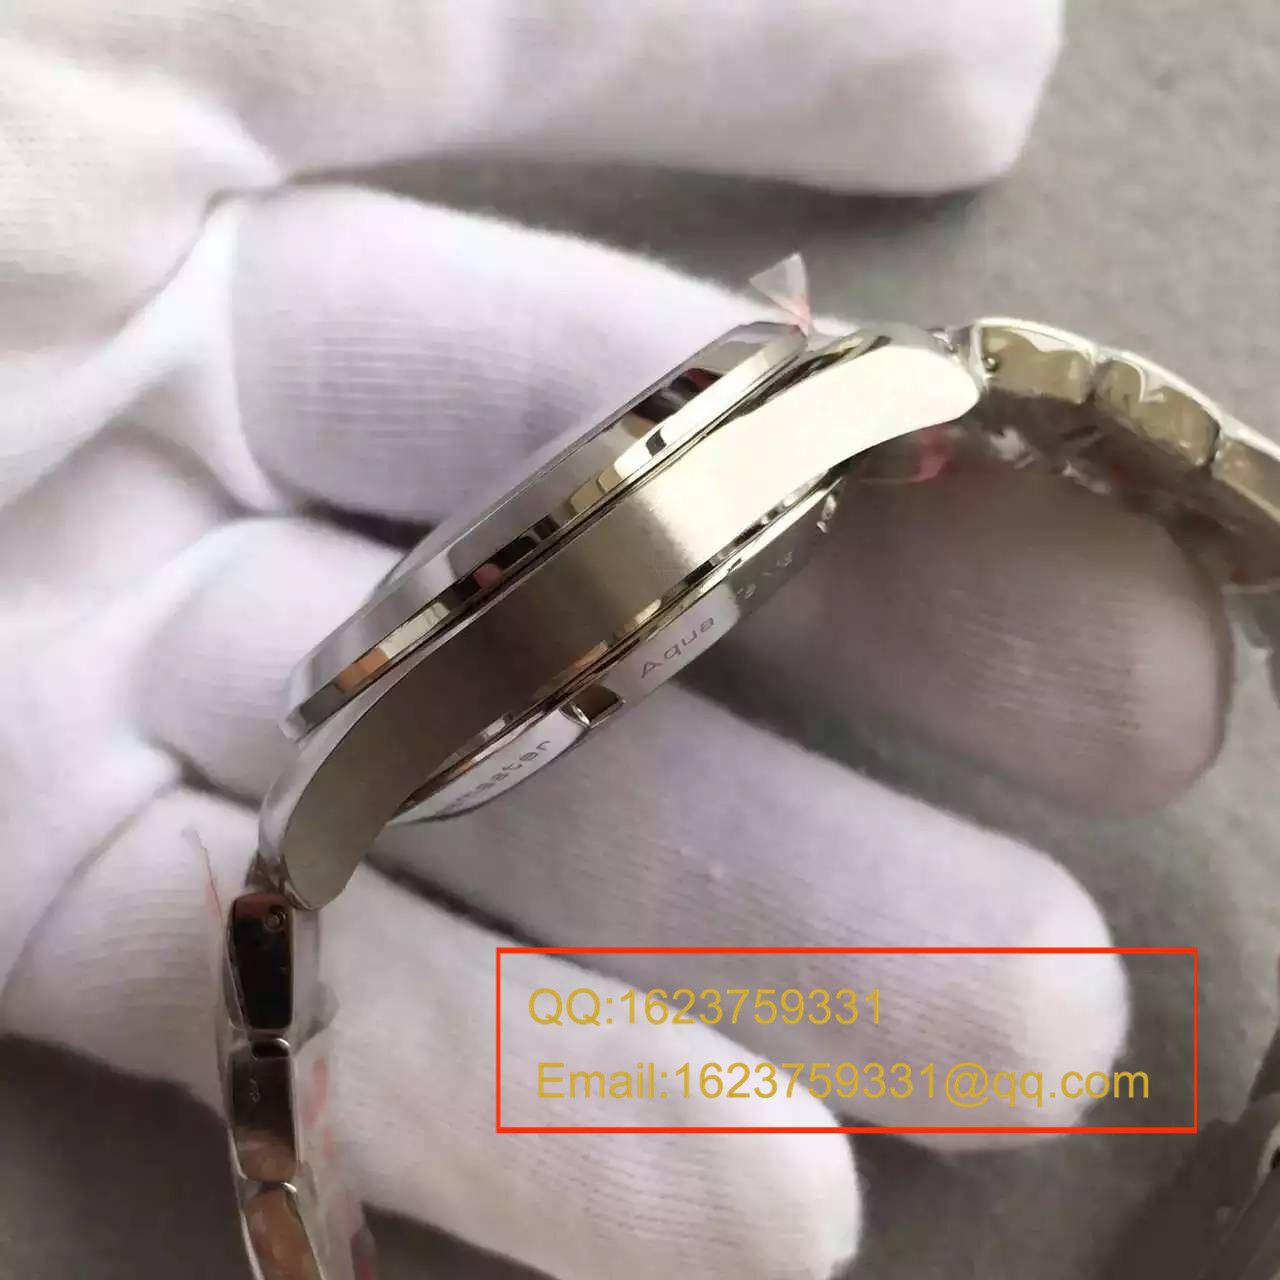 【KW厂完美版】欧米茄海马系列231.10.43.22.03.001 GMT双时区机械腕表 / M132